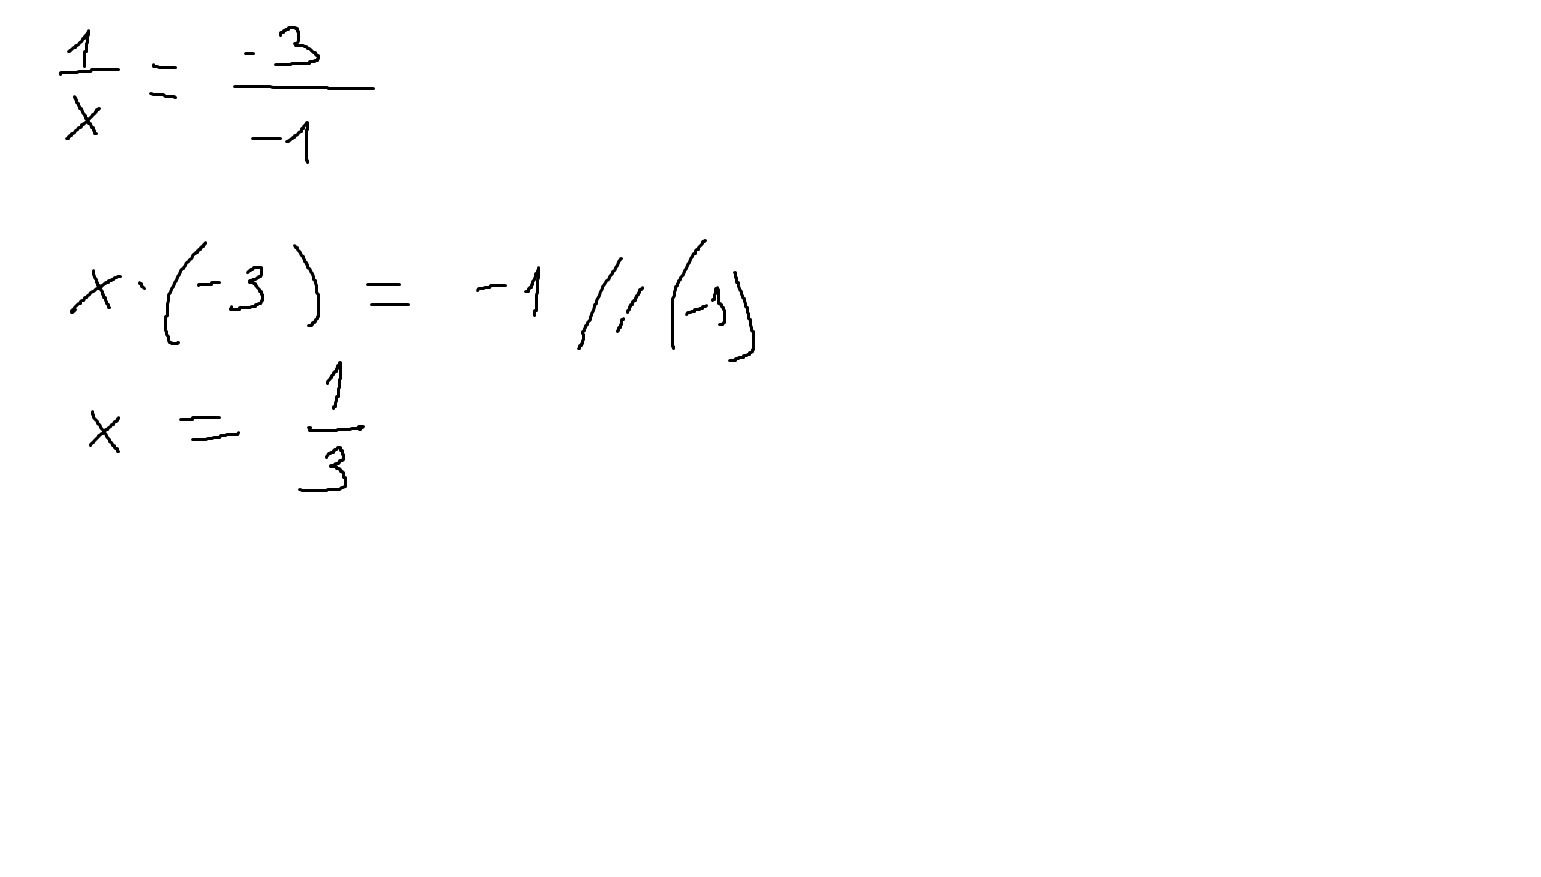 Вектор х 12. При каком значении х векторы коллинеарны. При каком значении x векторы коллинеарны. Вектор х-120. При каких значениях х векторы а и б коллинеарны.